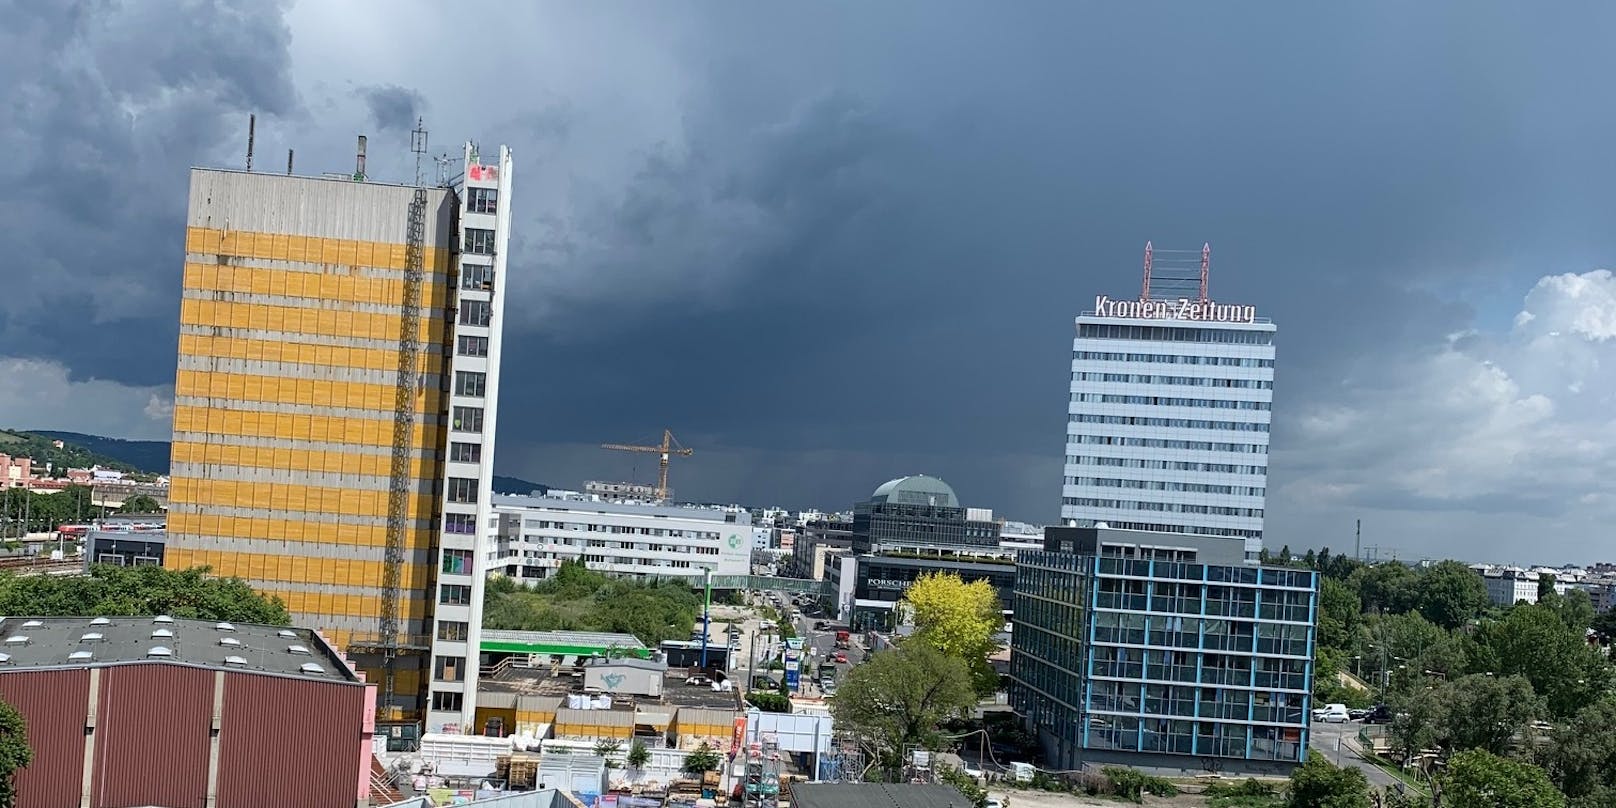 Unwetter-Alarm für Wien